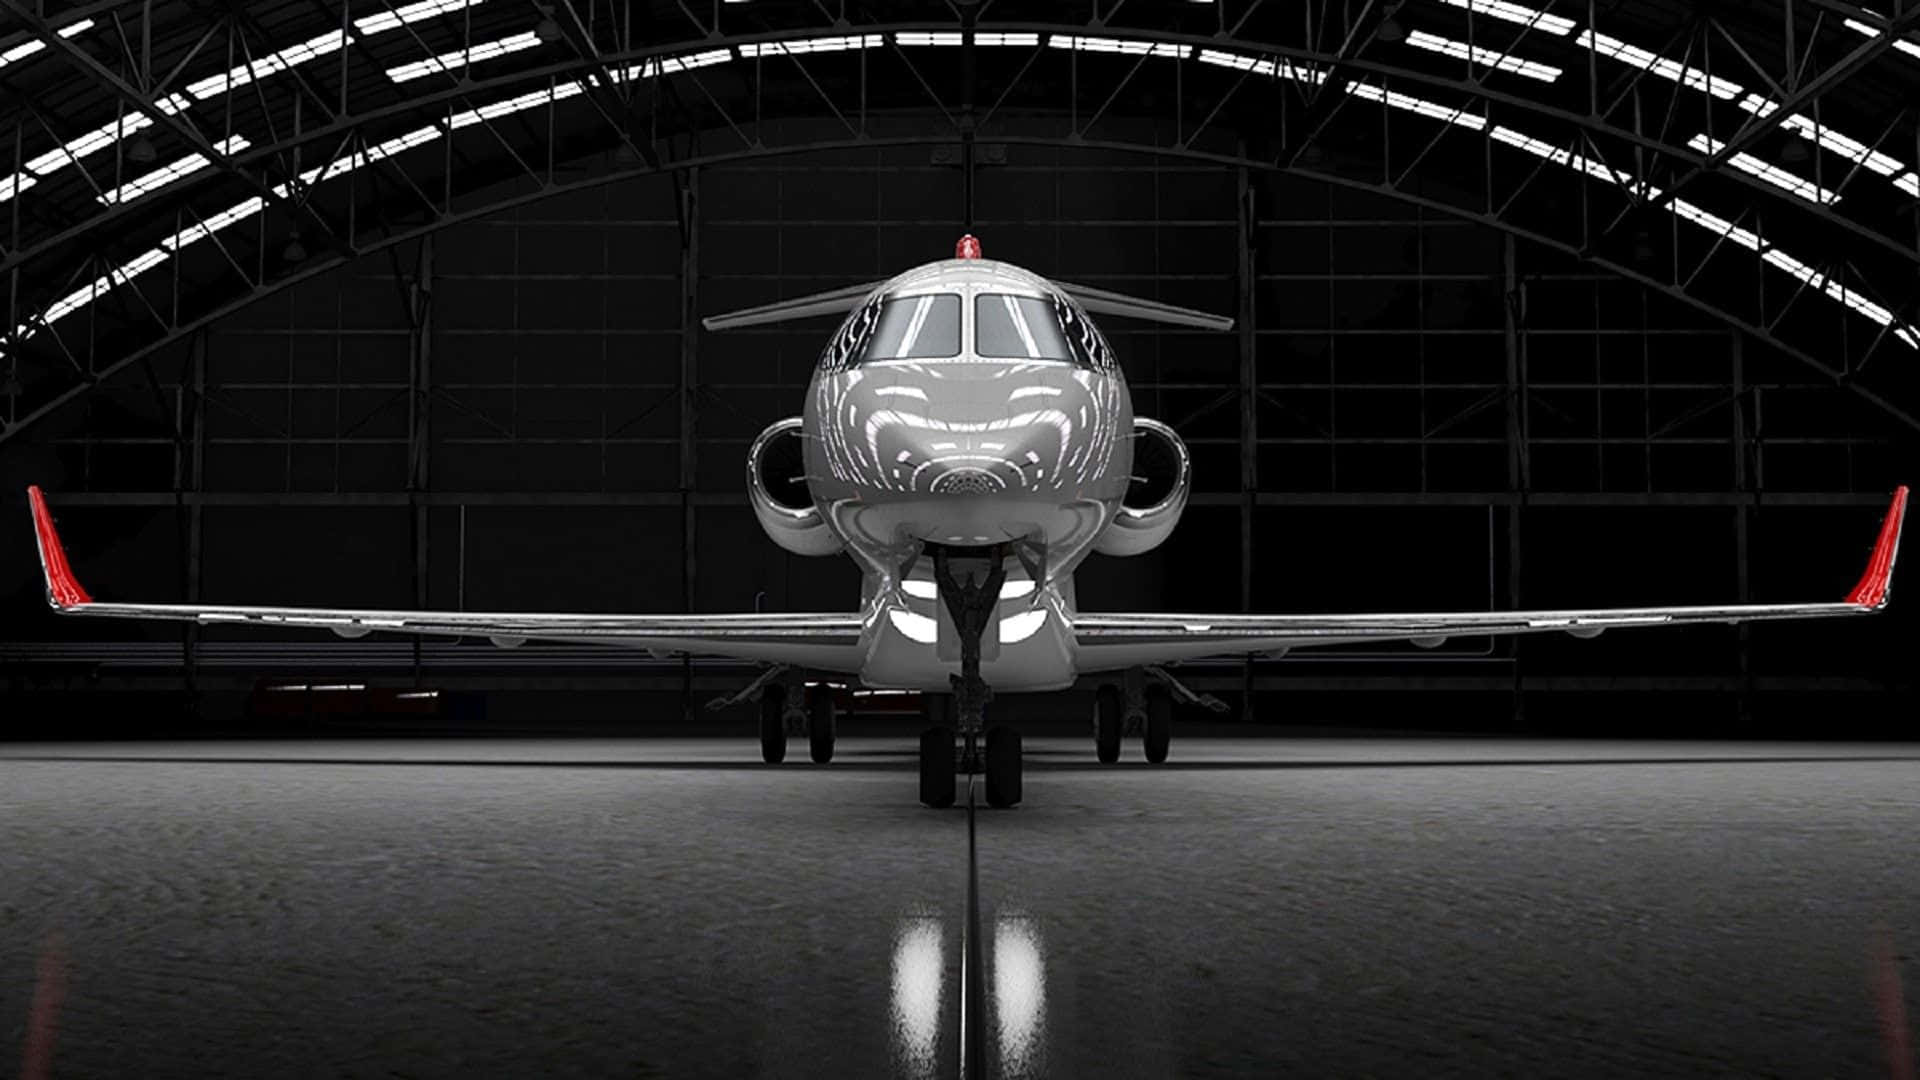 Private Jet In Hangar Wallpaper